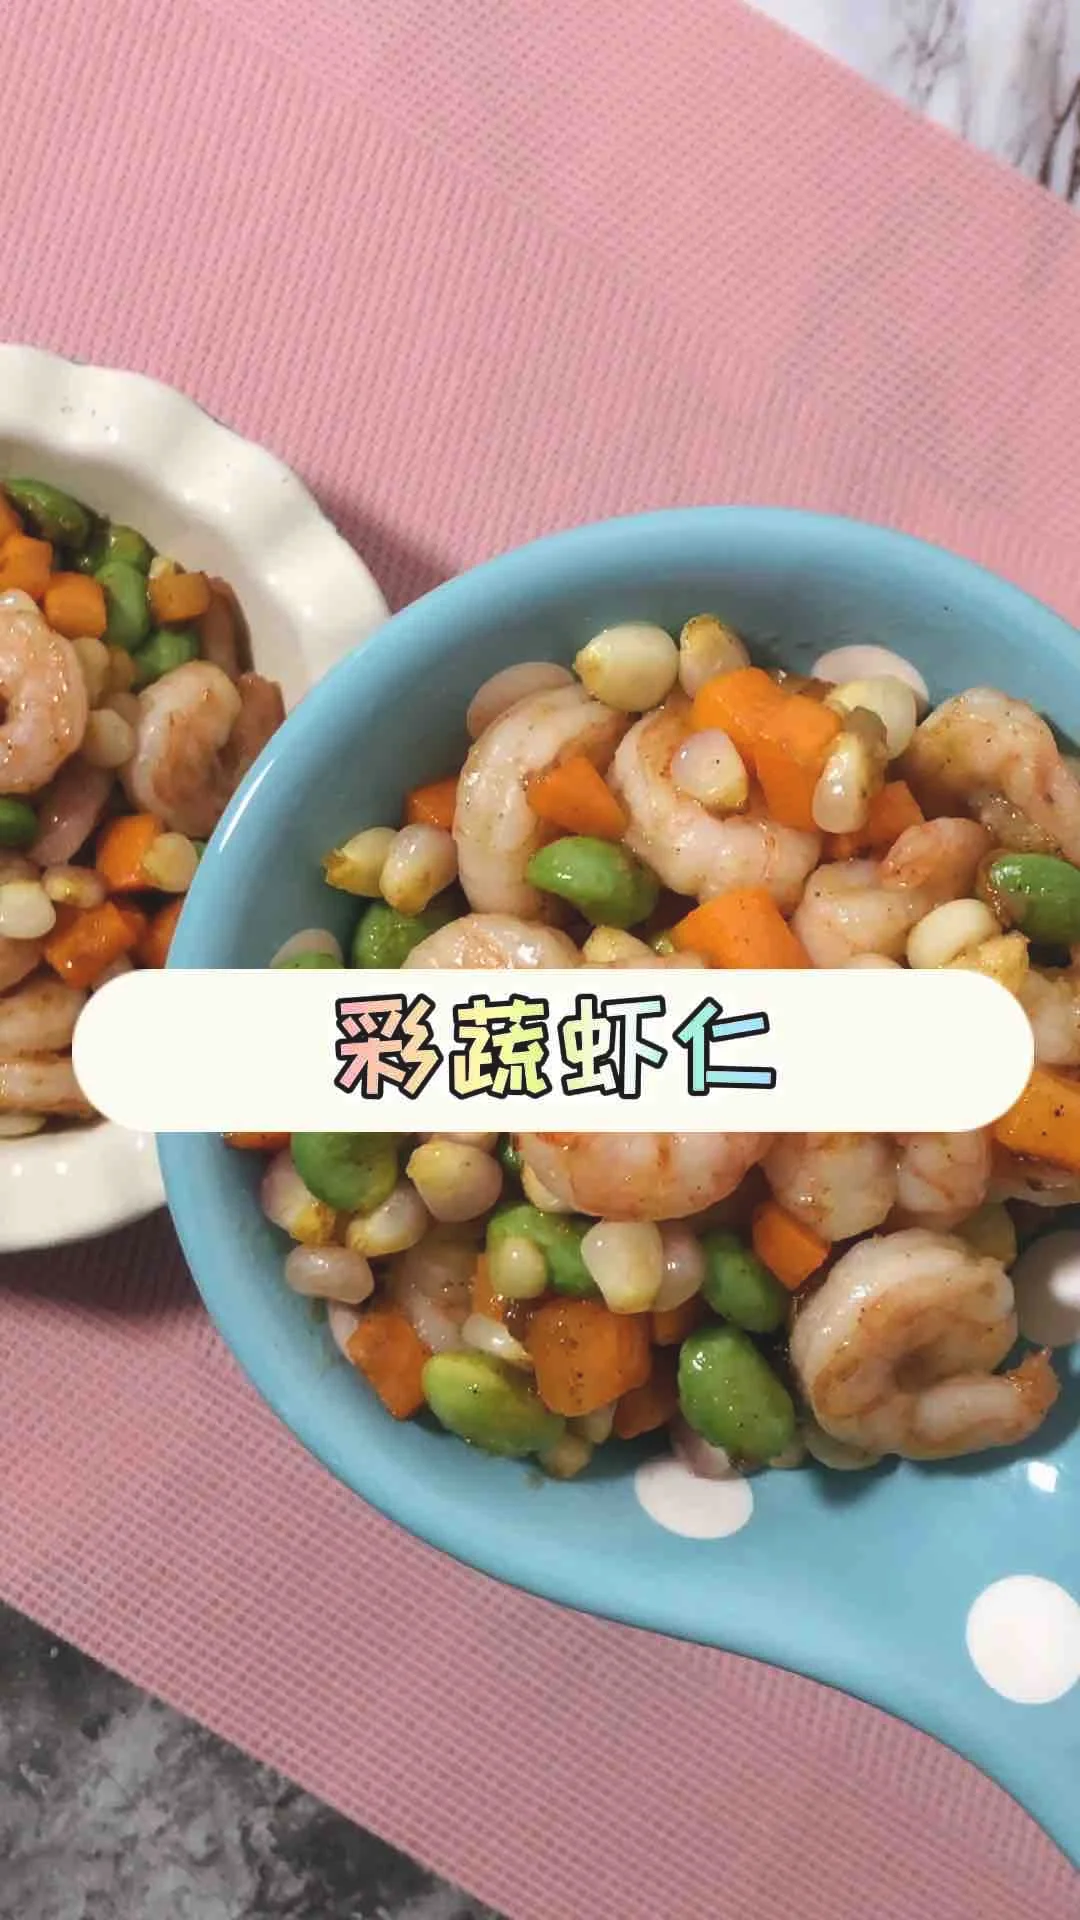 彩蔬虾仁的做法-咸鲜味炒菜谱